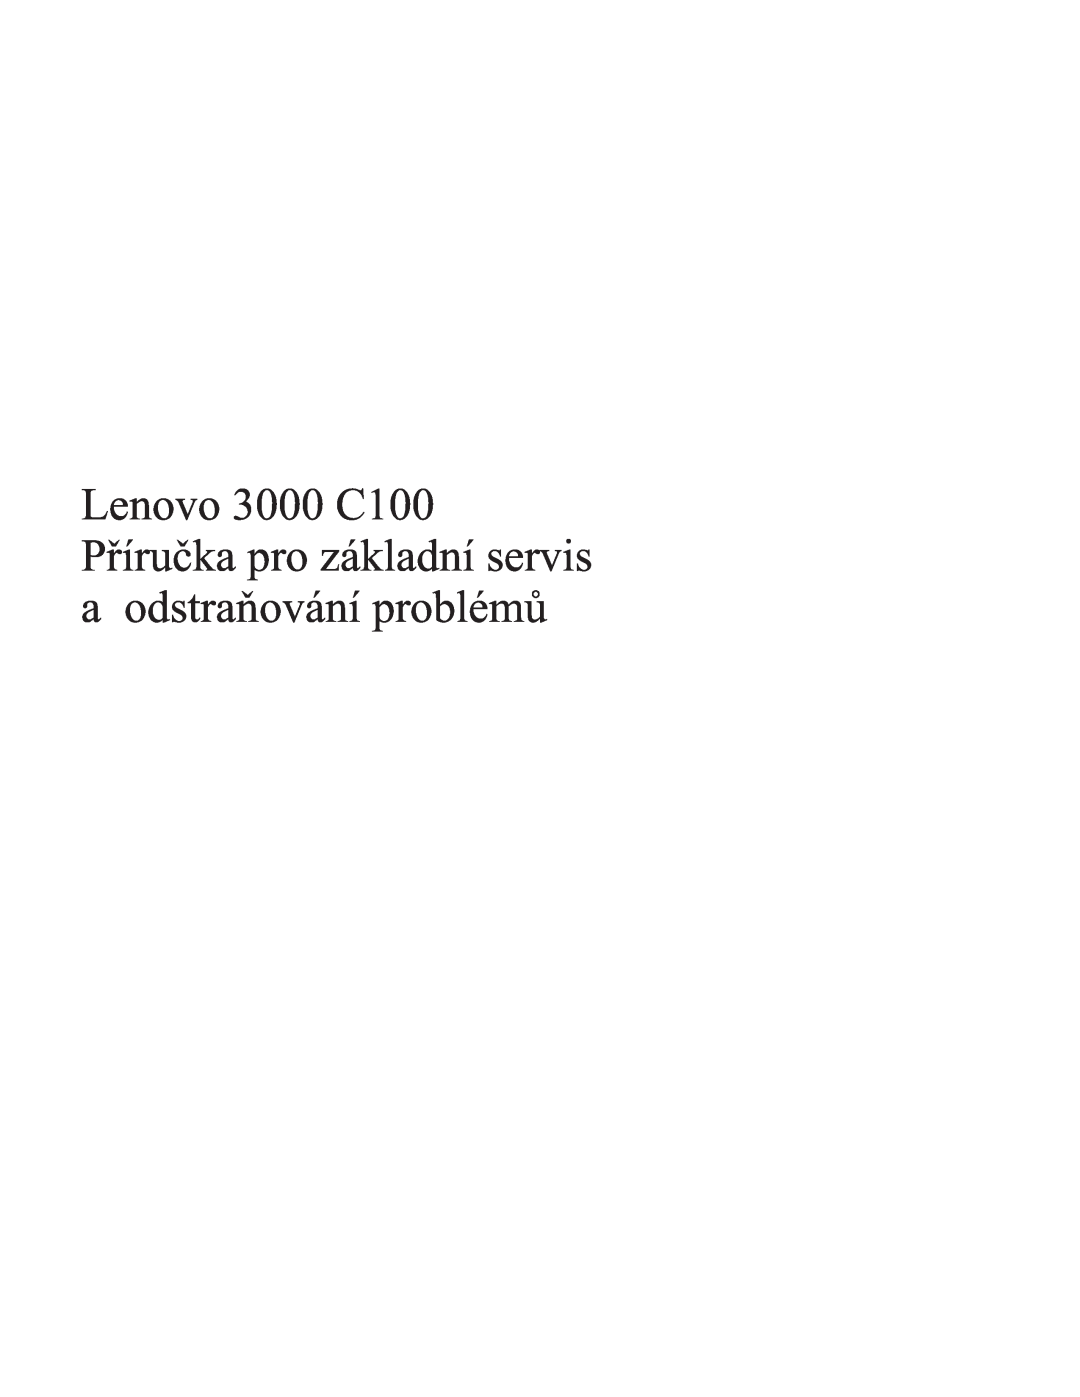 Lenovo C100 manual 